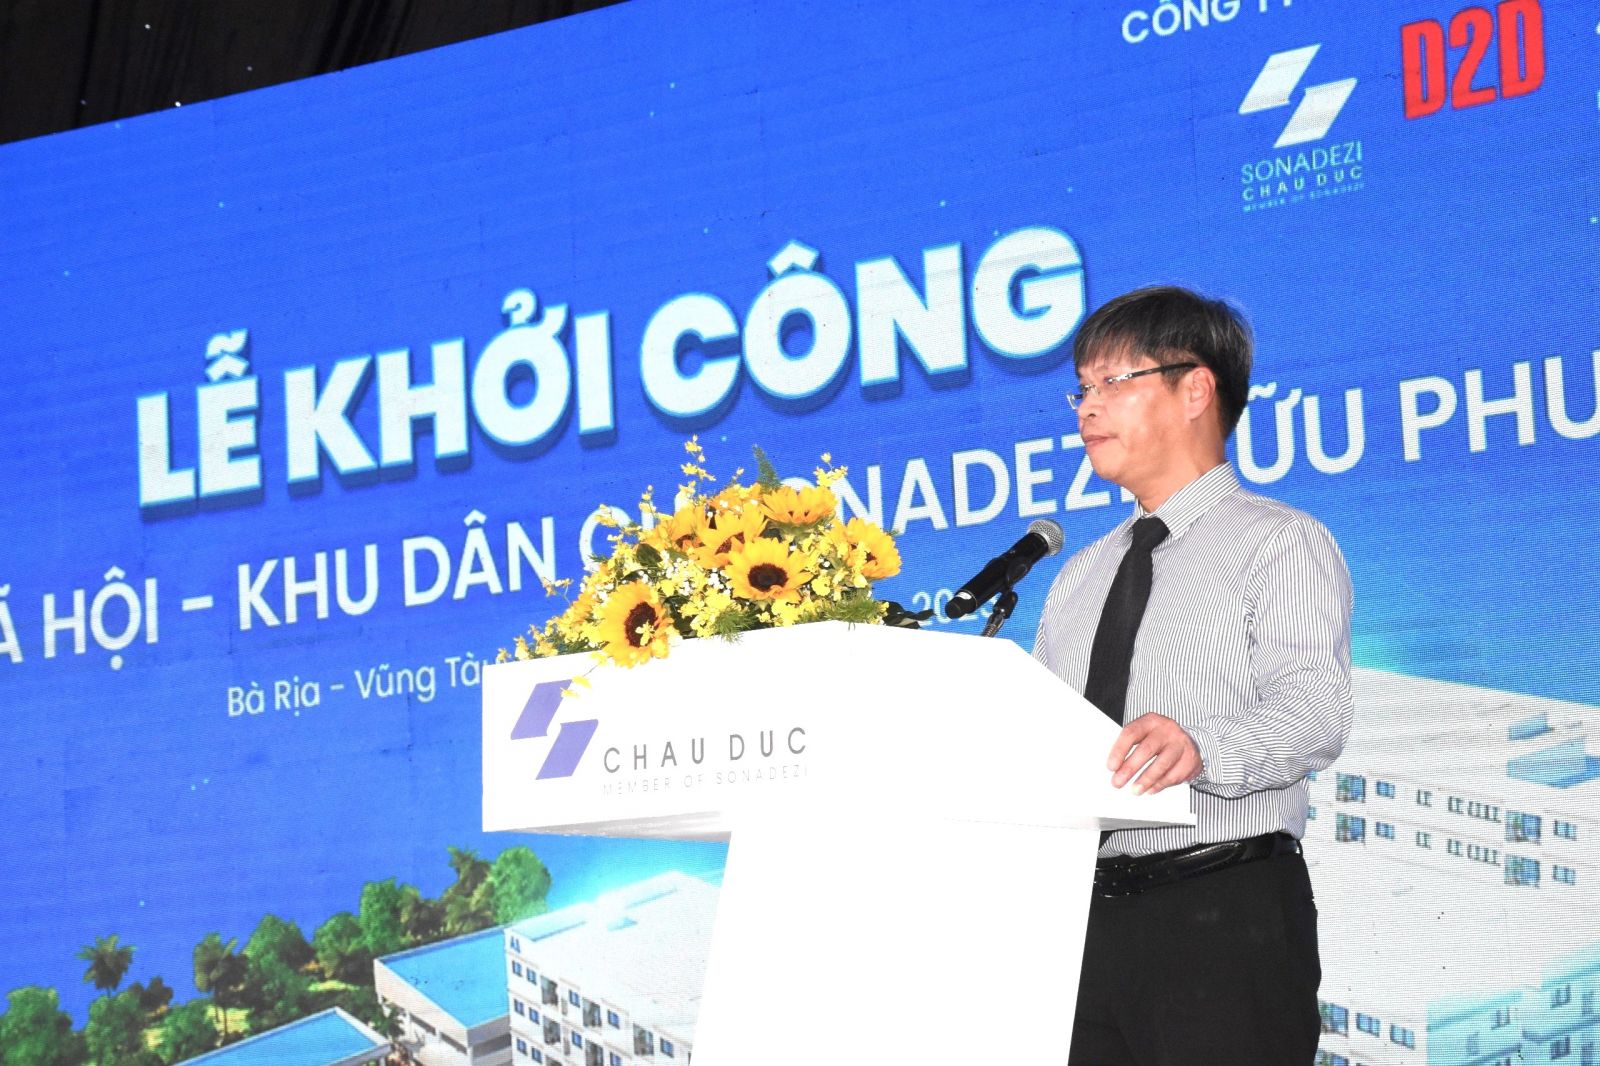 Ông Nguyễn Văn Tuấn - Tổng Giám đốc Công ty CP Sonadezi Châu Đức phát biểu tại lễ khởi công